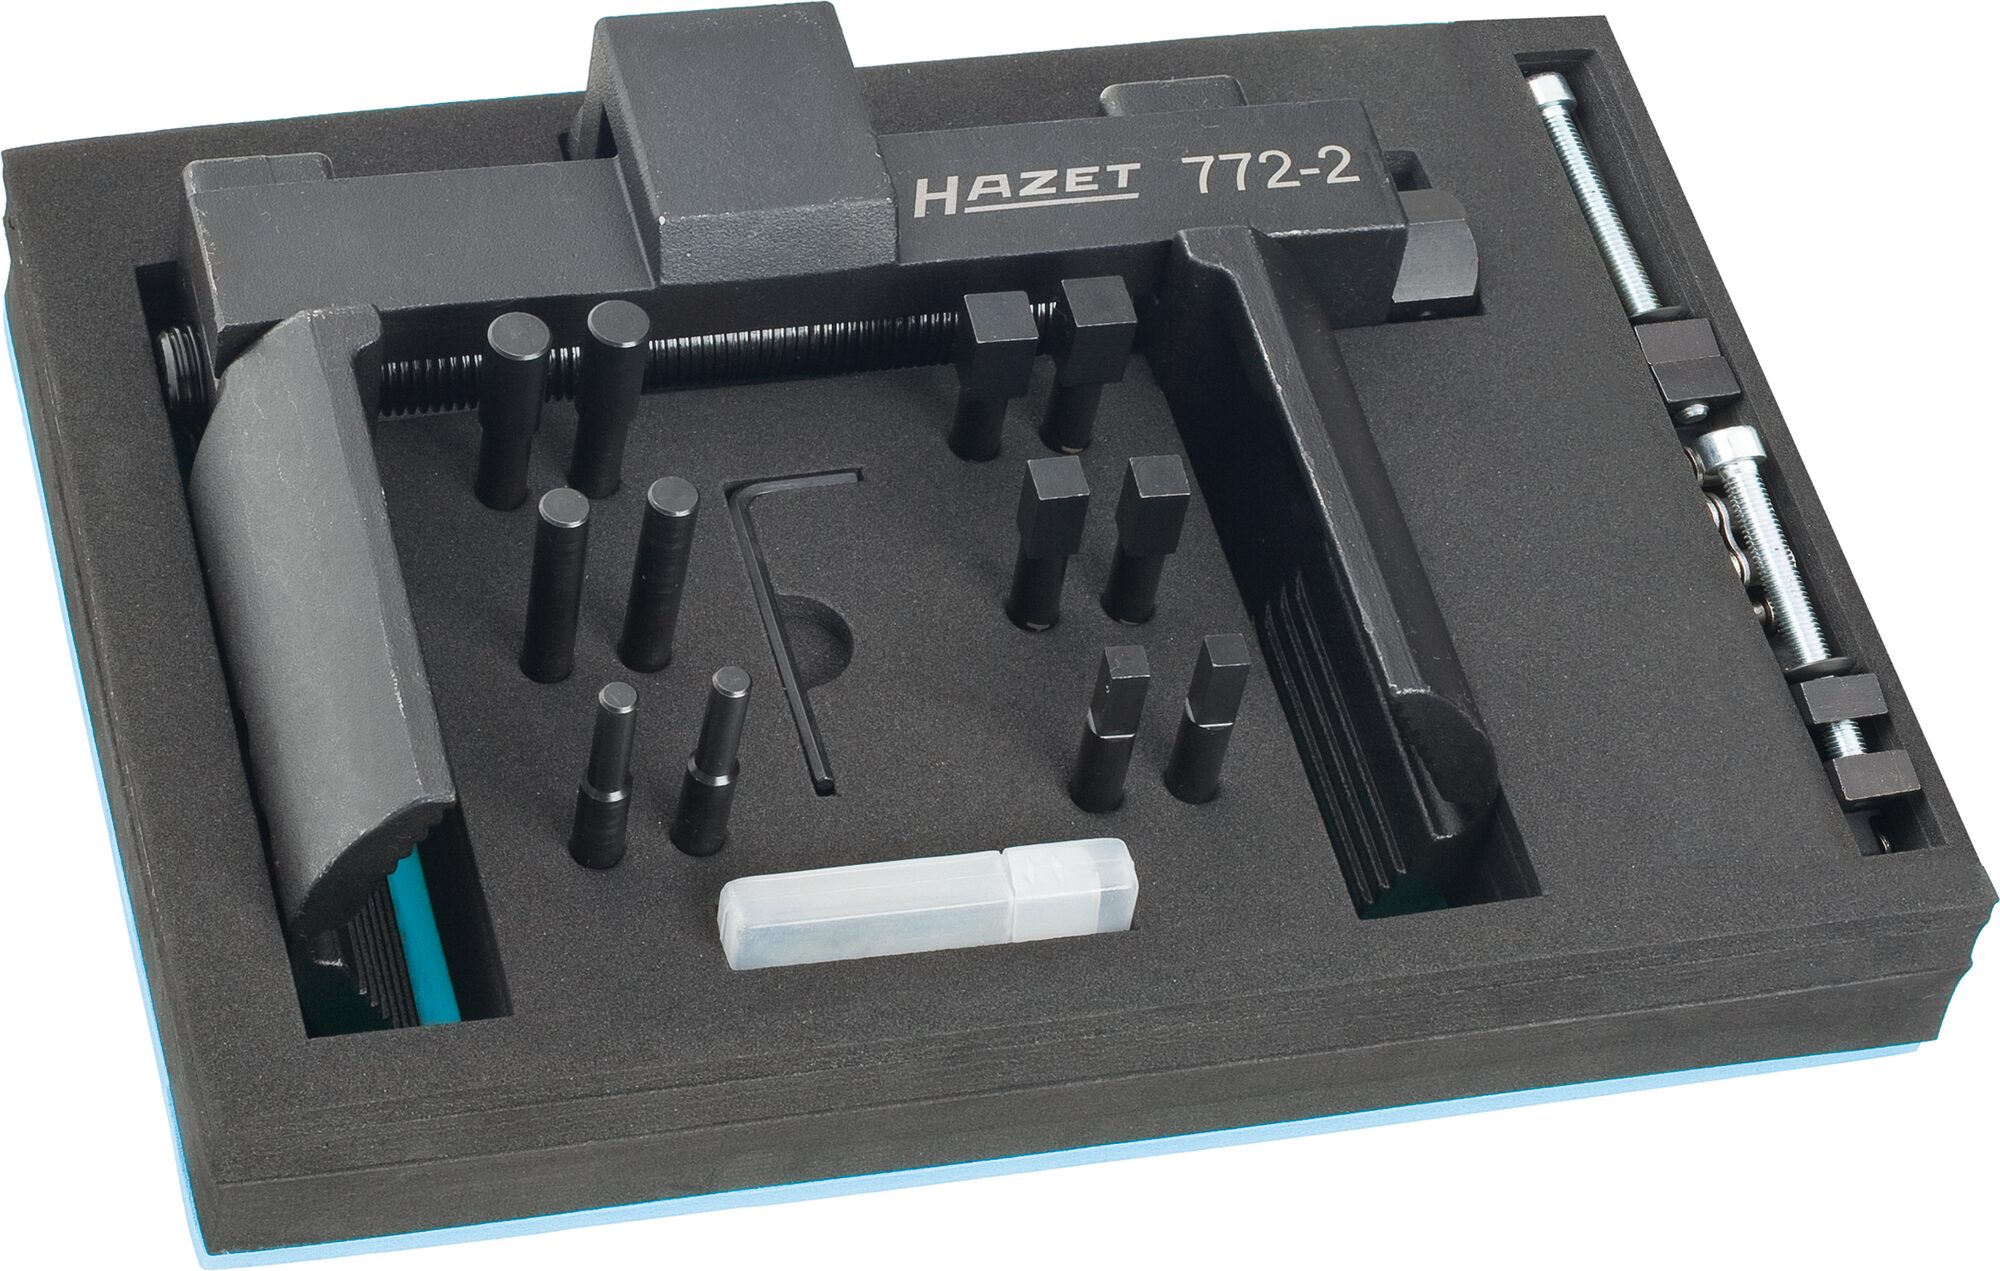 HAZET Universal Achs- und Nutmuttern-Schlüsseleinheit Werkzeug Satz 772-2/16 · Vierkant hohl 20 mm (3/4 Zoll) · Anzahl Werkzeuge: 16